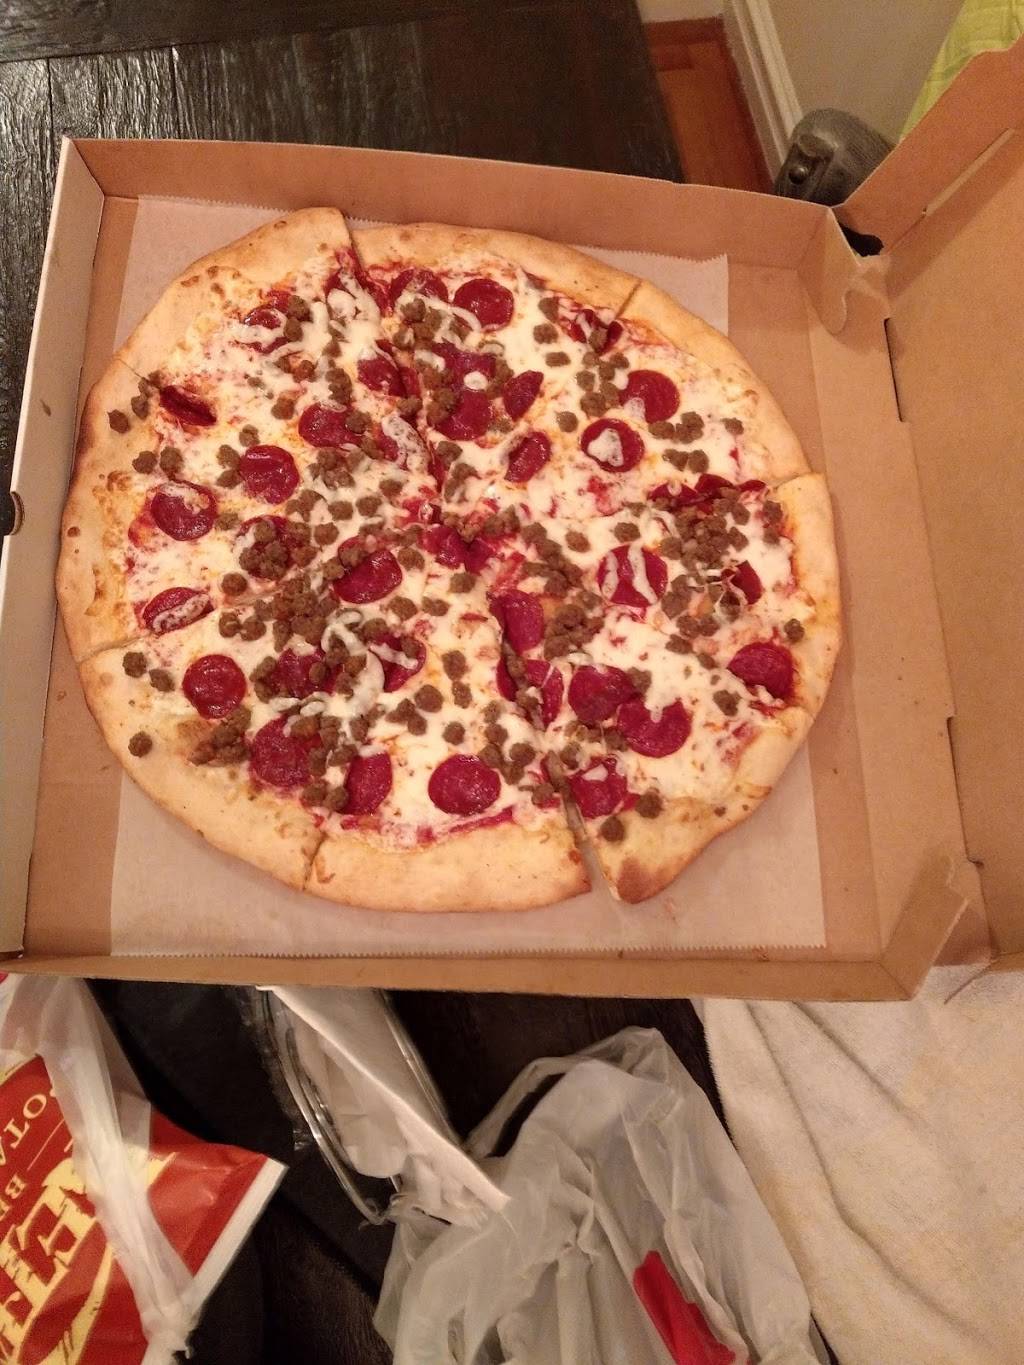 99 Cents Fresh Pizza | restaurant | 201 E 34th St B, New York, NY 10016, USA | 2128898858 OR +1 212-889-8858